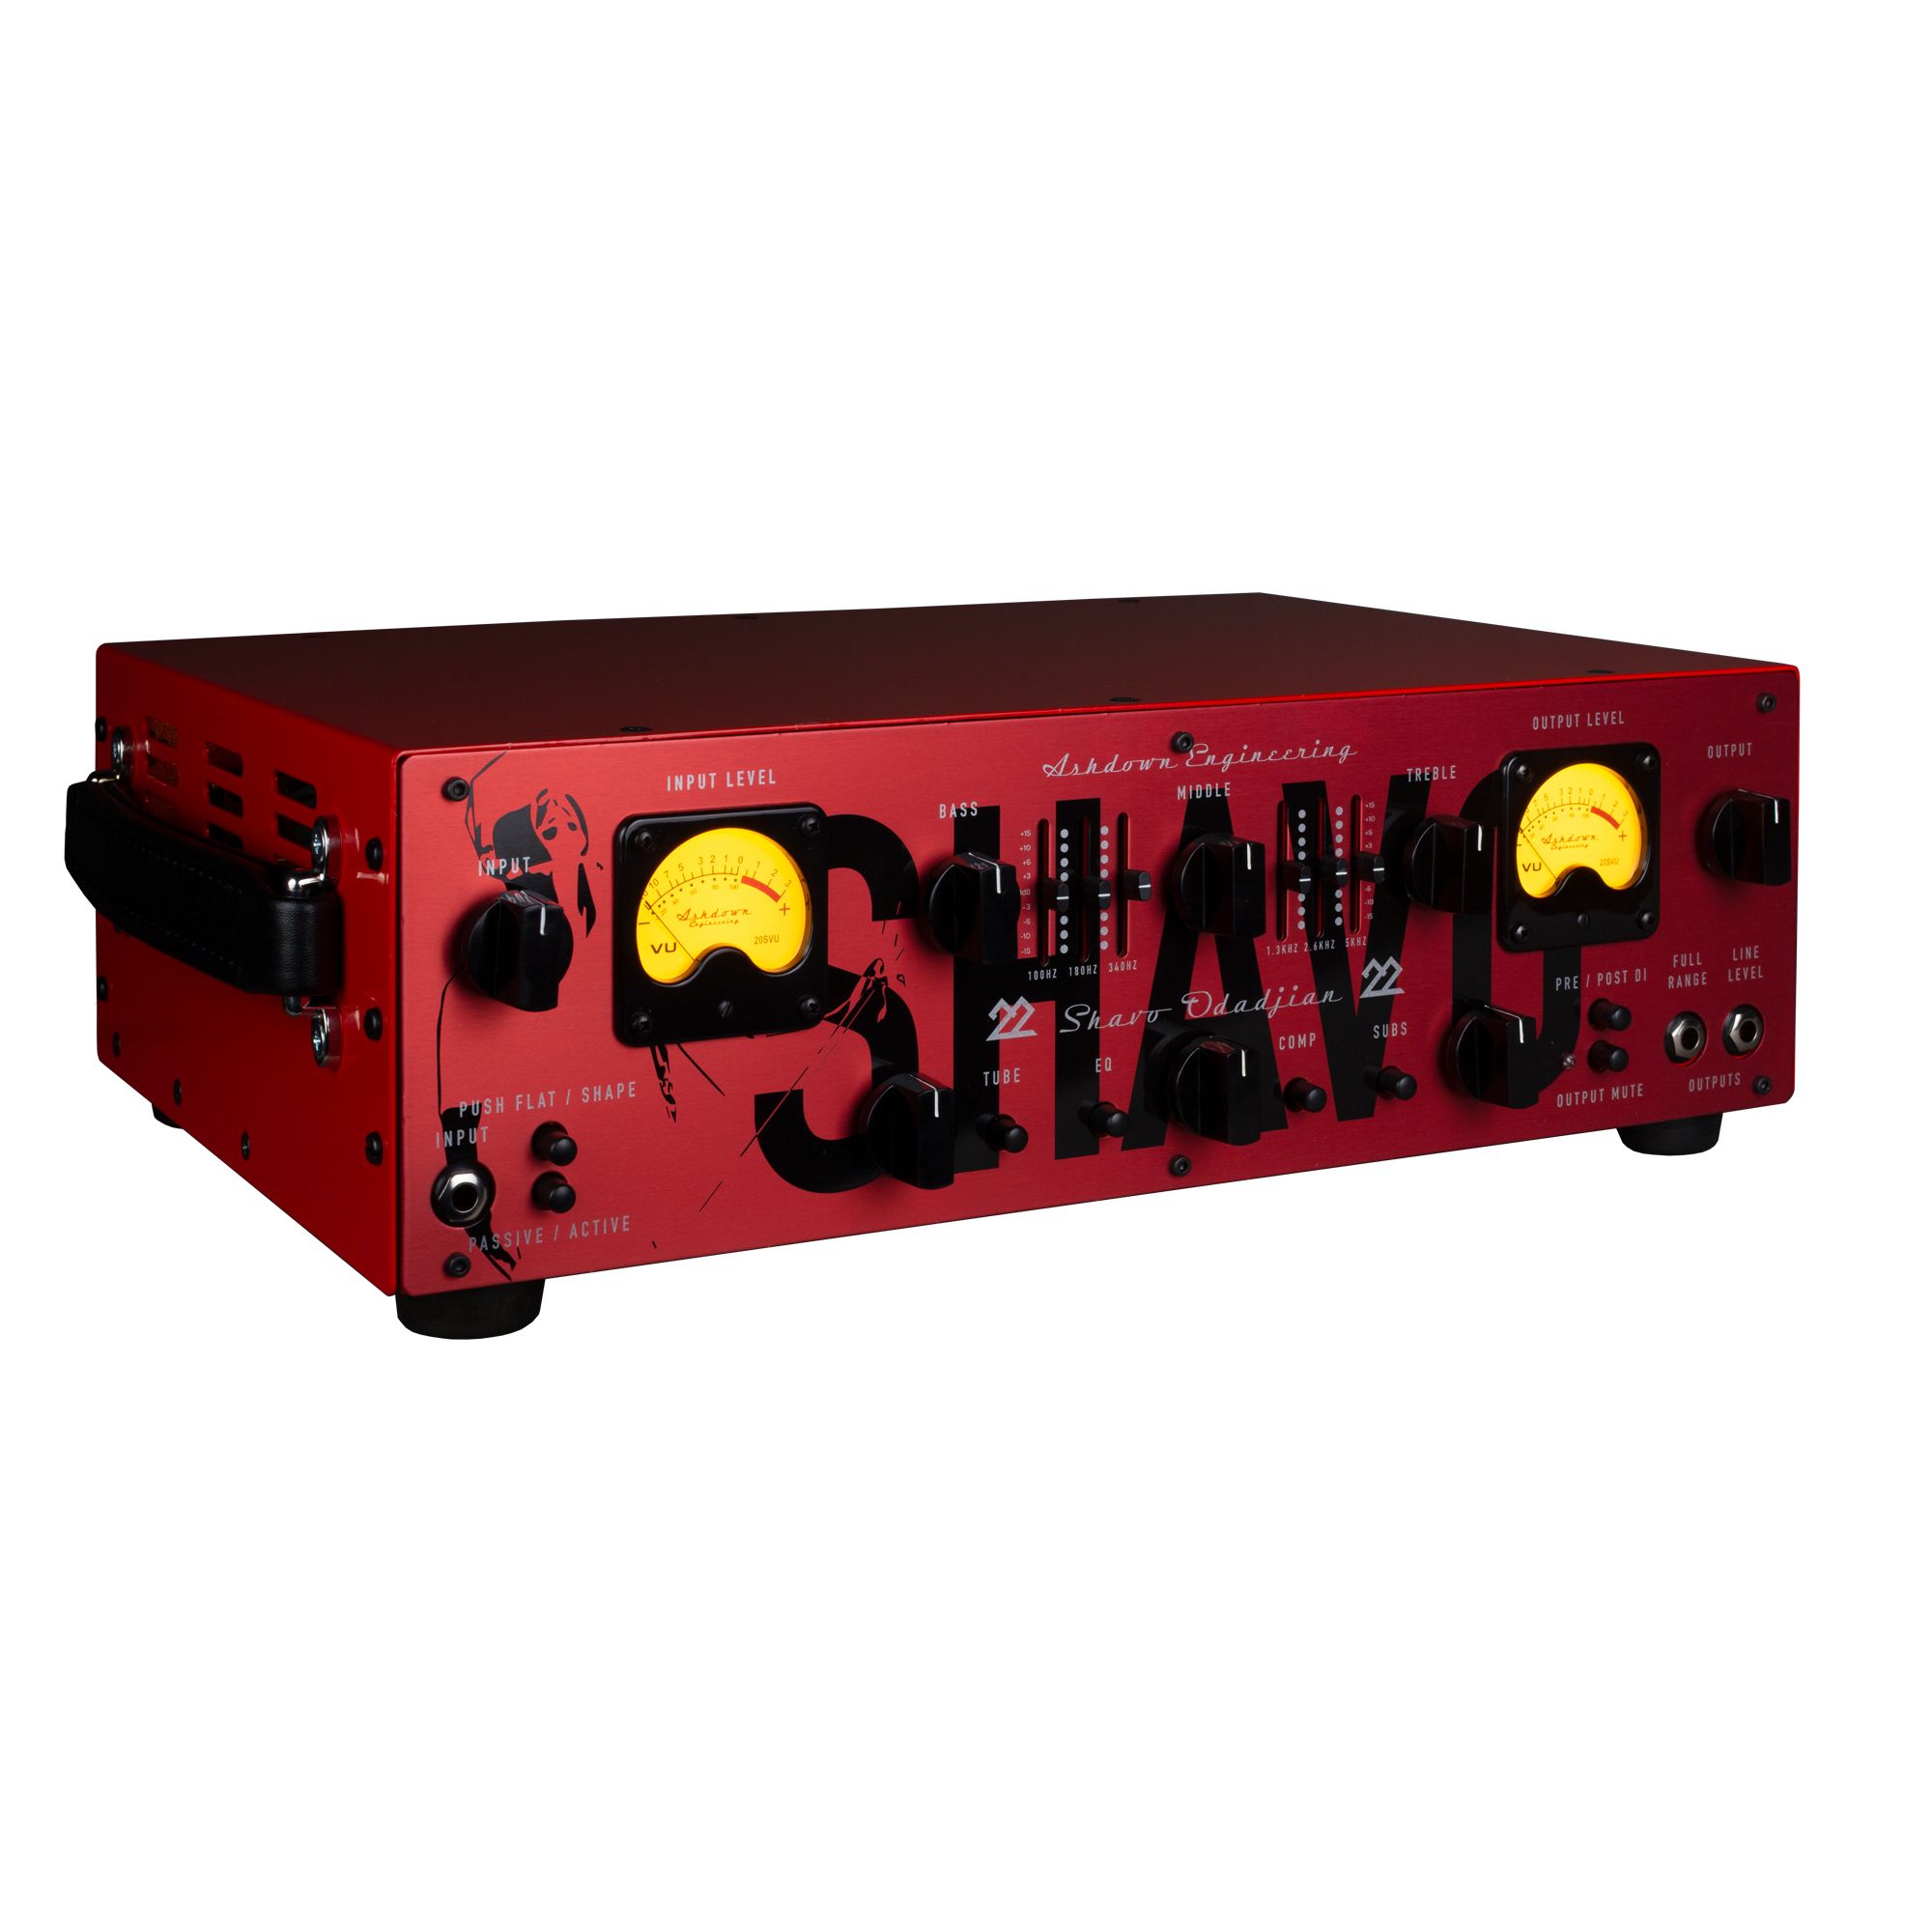 Ashdown 22-head Shavo Odadjian Signature 600w - TÊte Ampli Basse - Variation 1